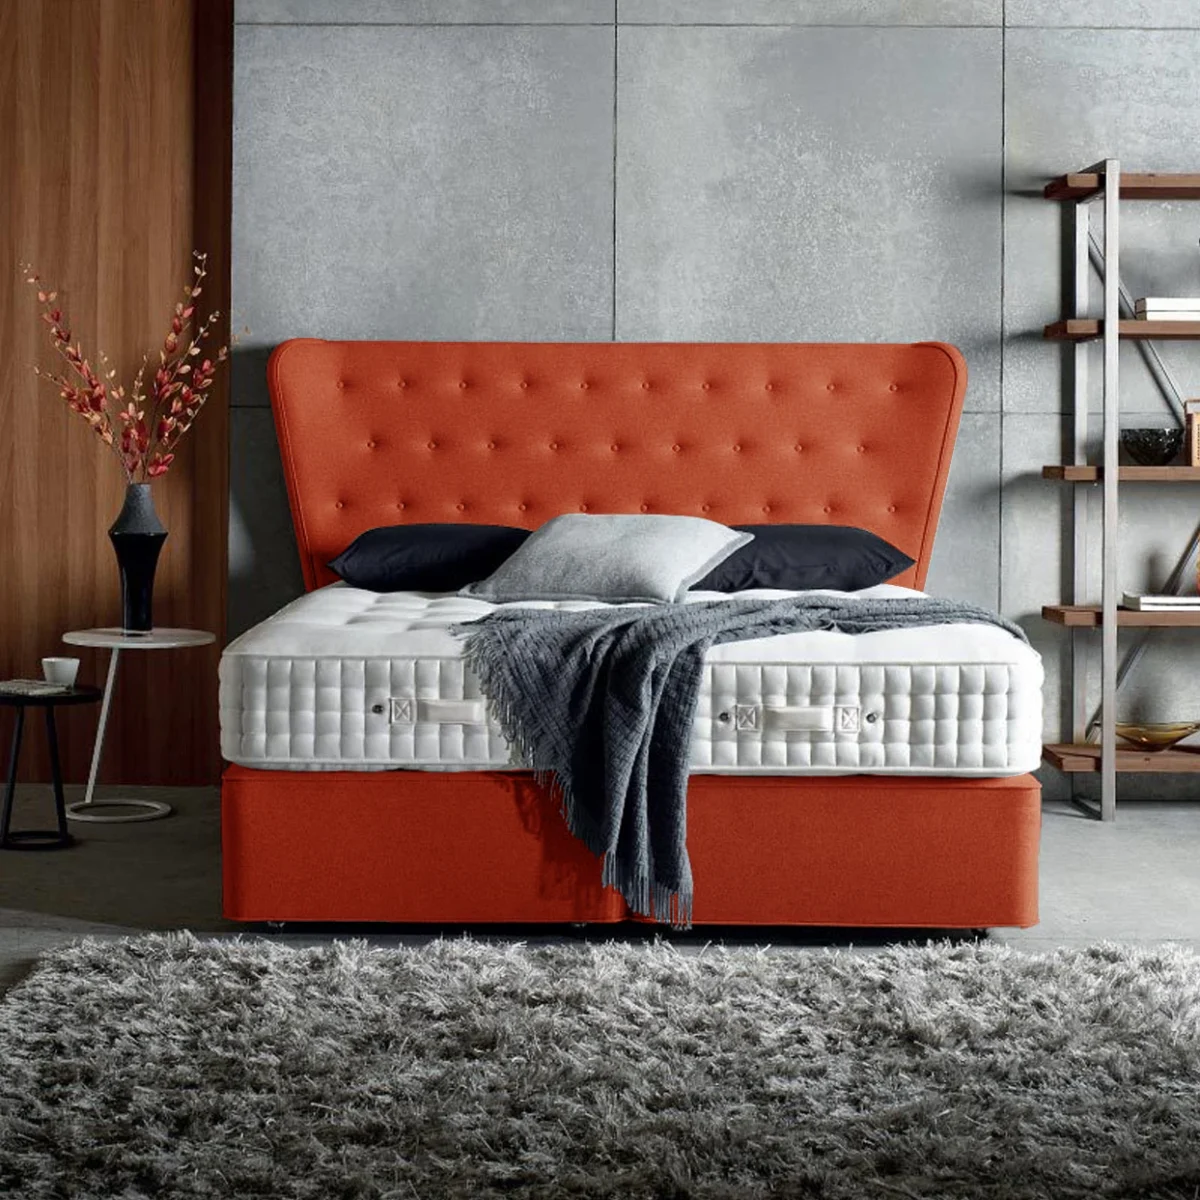 Υφασμάτινο Κρεβάτι Ύπνου Thassos Orange ypnos.gr